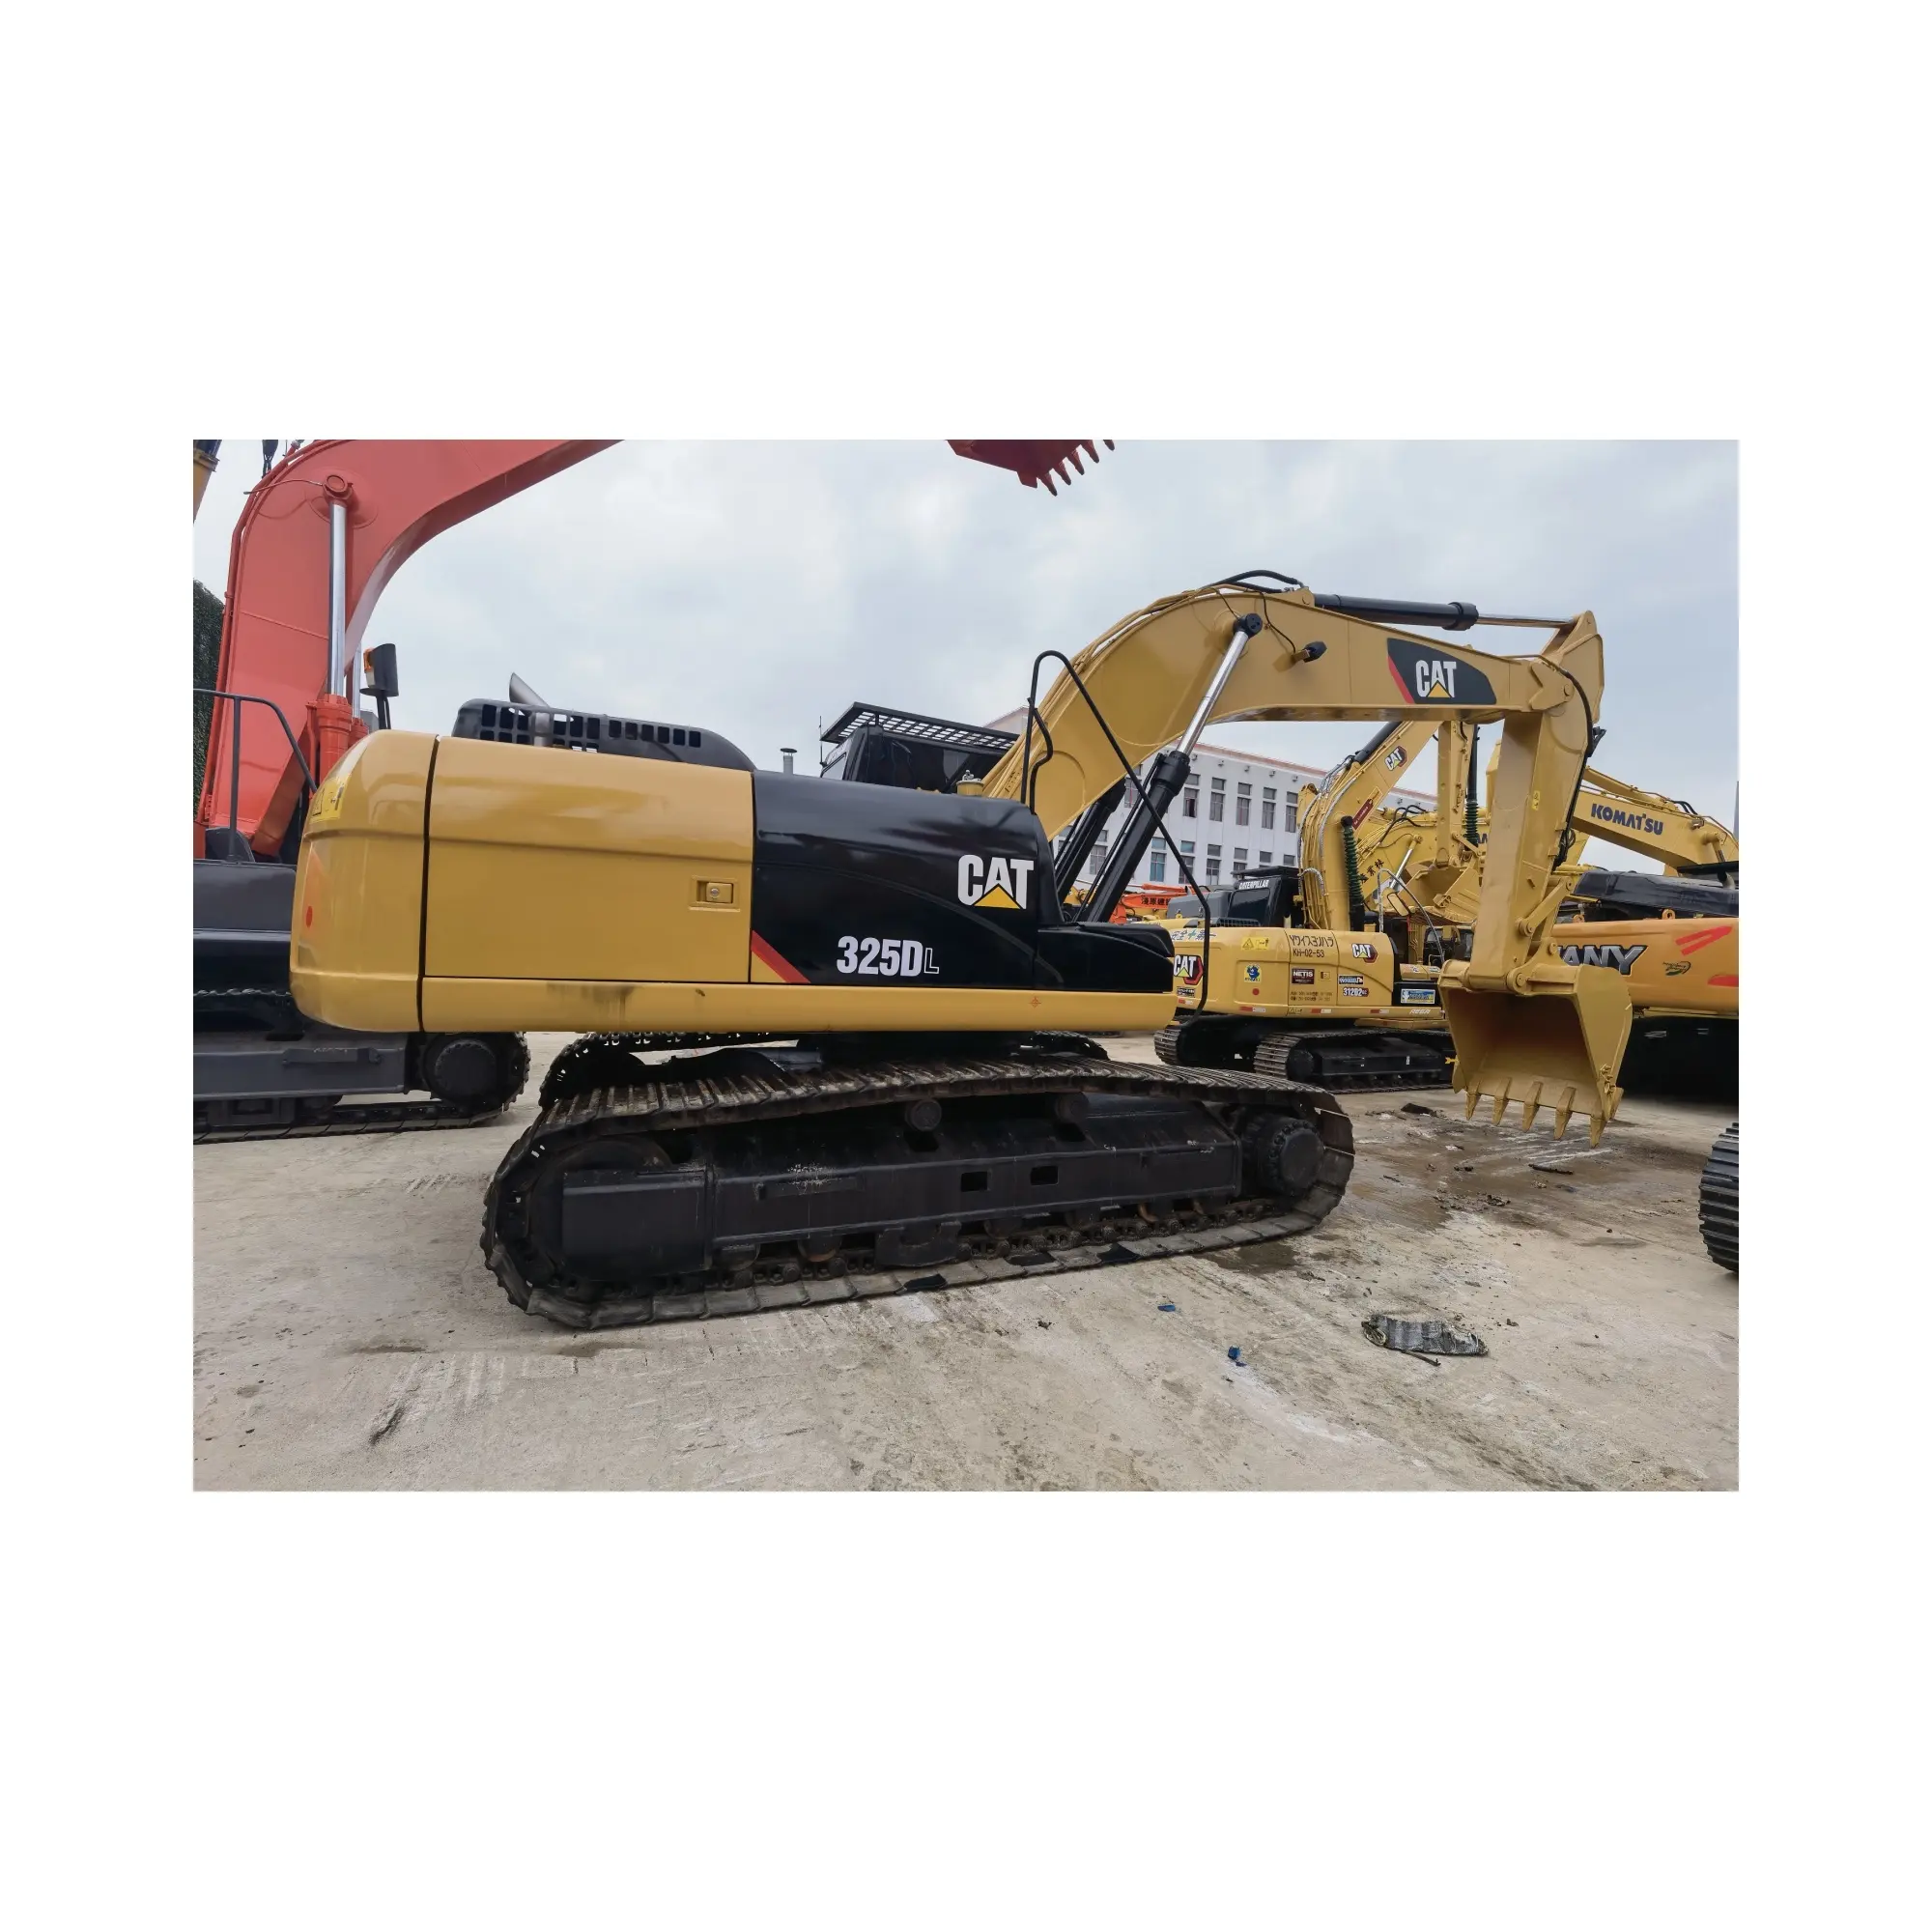 Escavatore usato CAT 320D macchine movimento terra caterpillar 325DL escavatori usati 325DL per la vendita